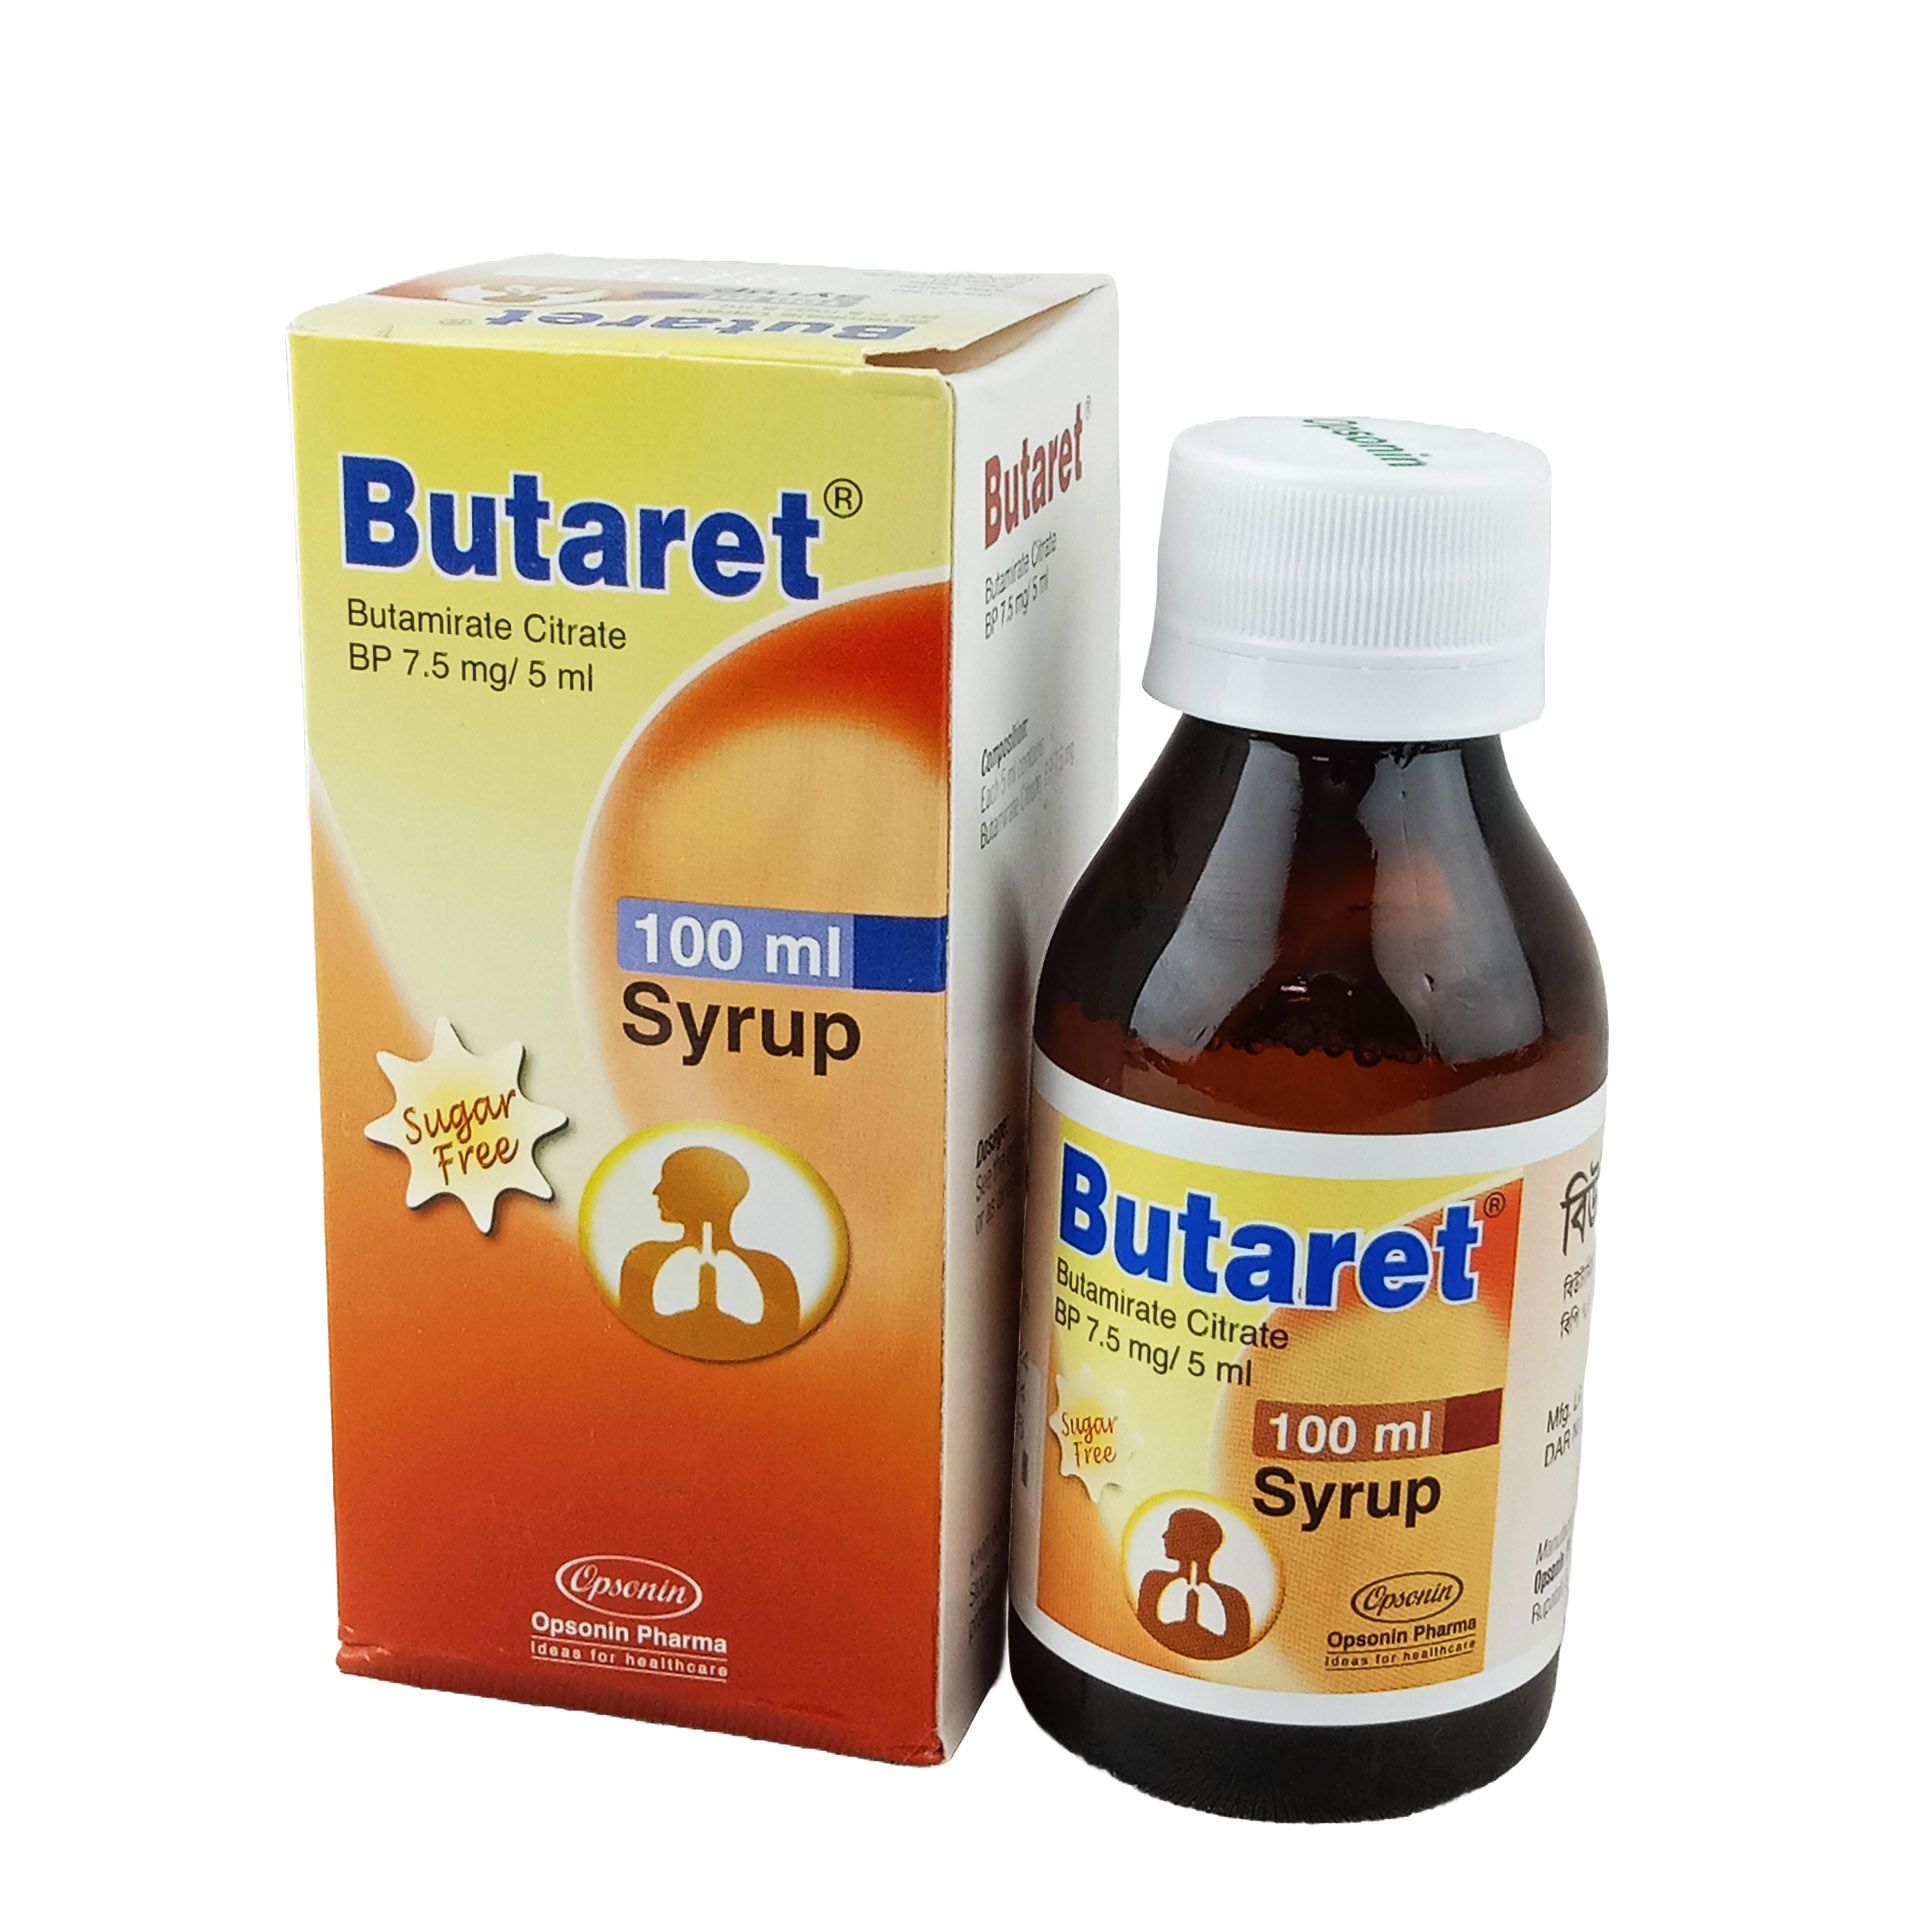 Butaret 7.5mg/5ml Syrup